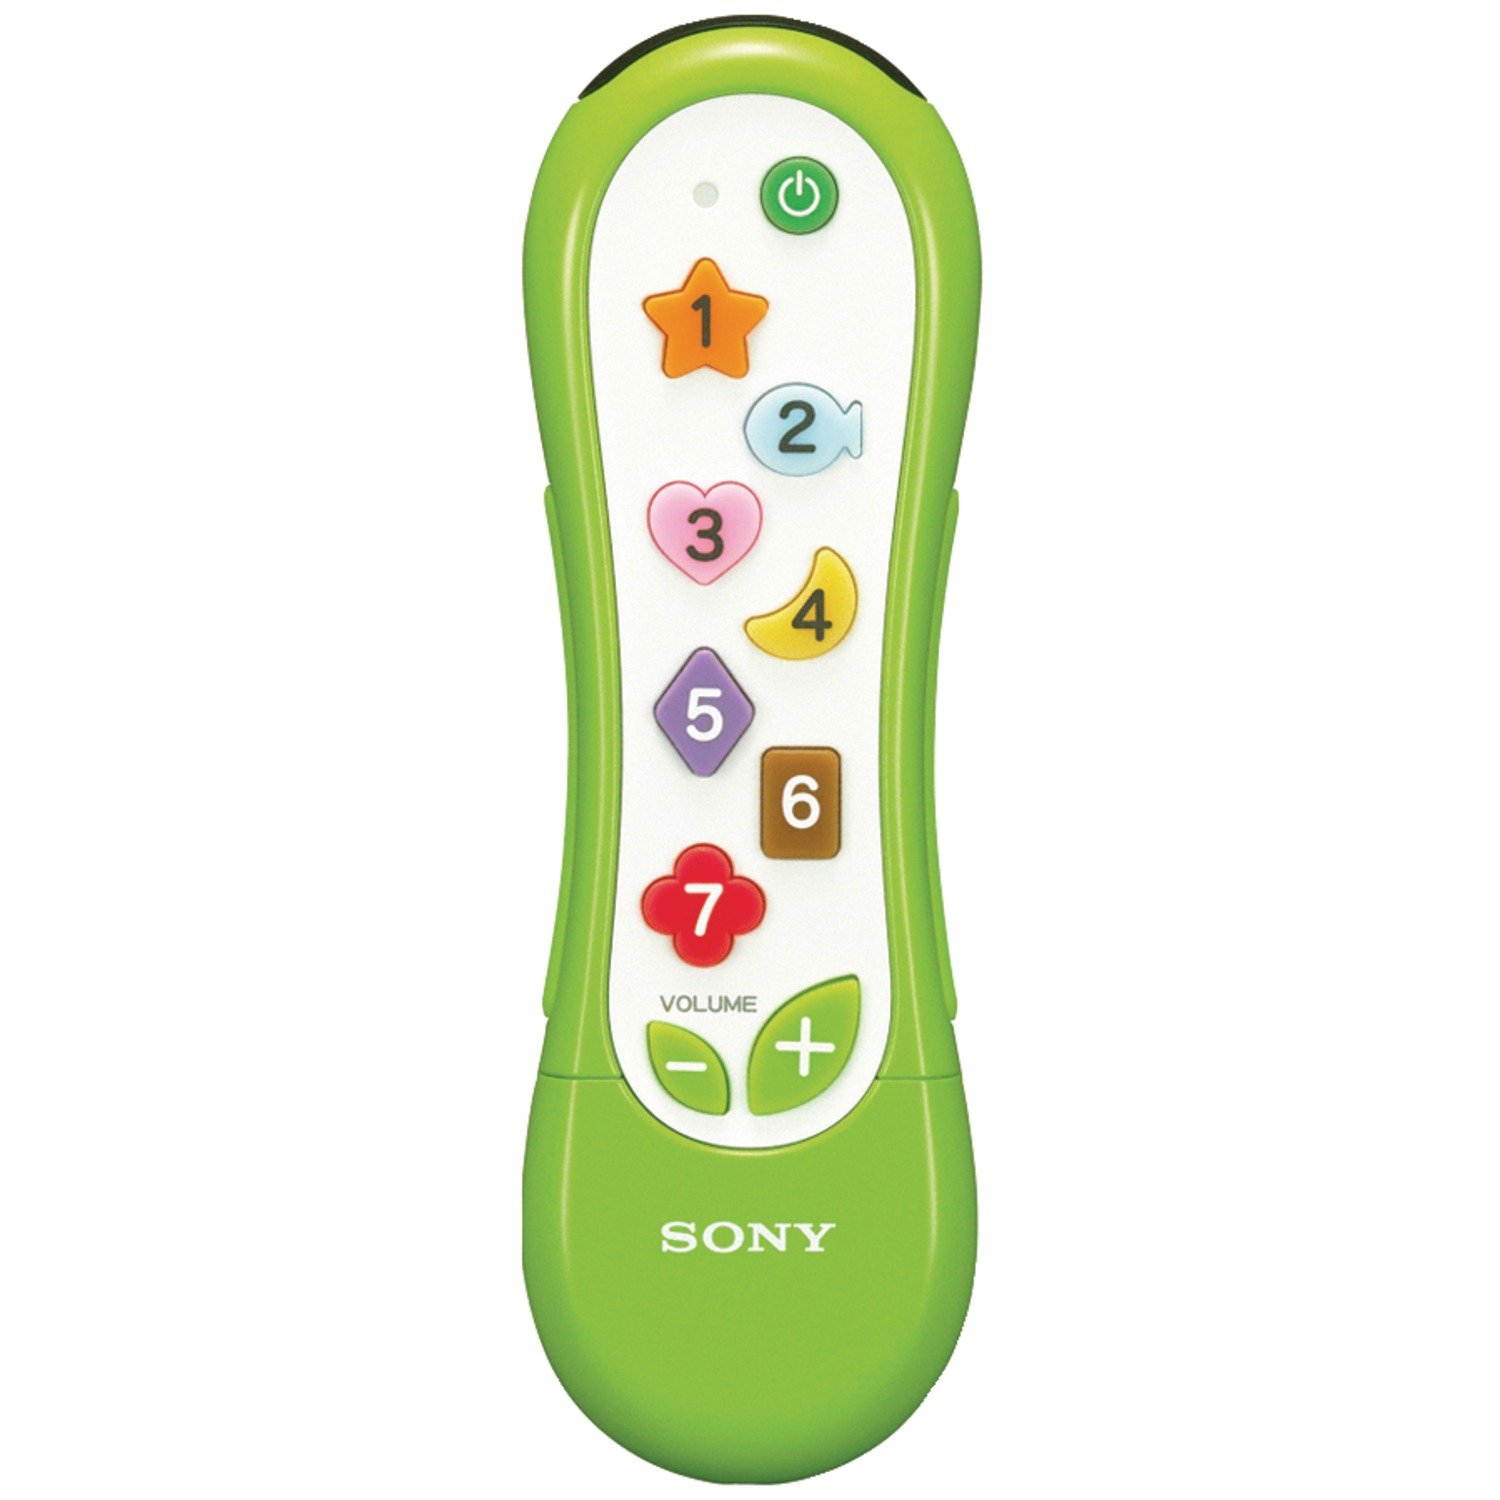 Sony remote control a.jpg